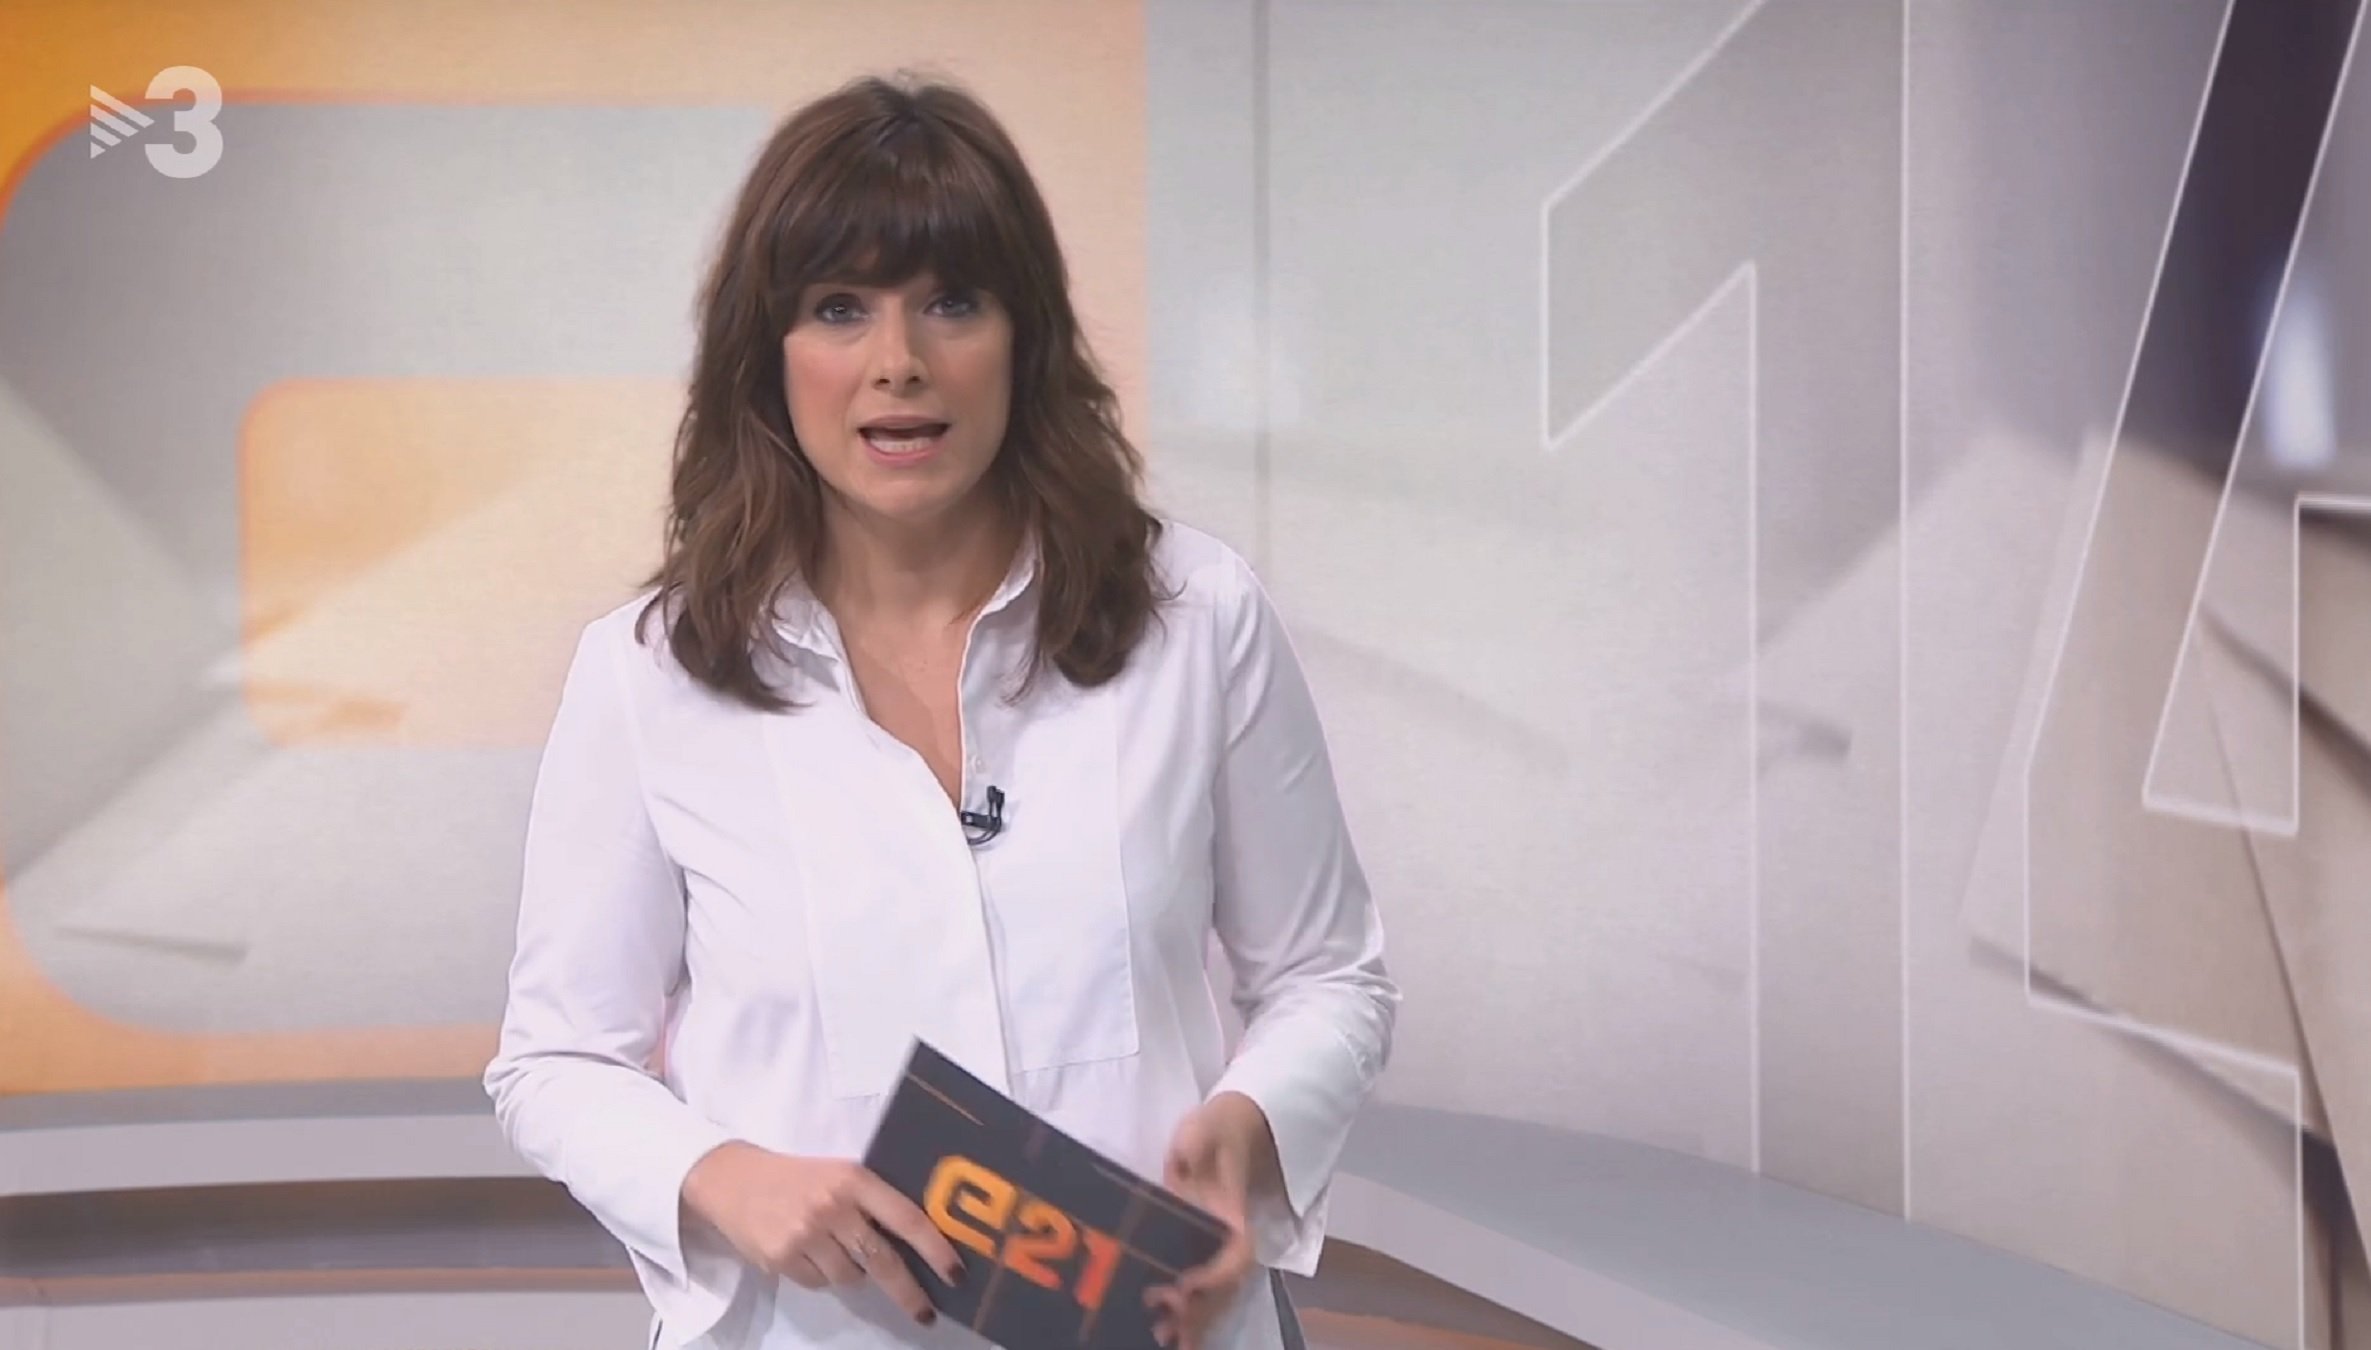 Ariadna Oltra, líder de TV3, hace una confesión íntima en RAC1: "Voy a terapia"